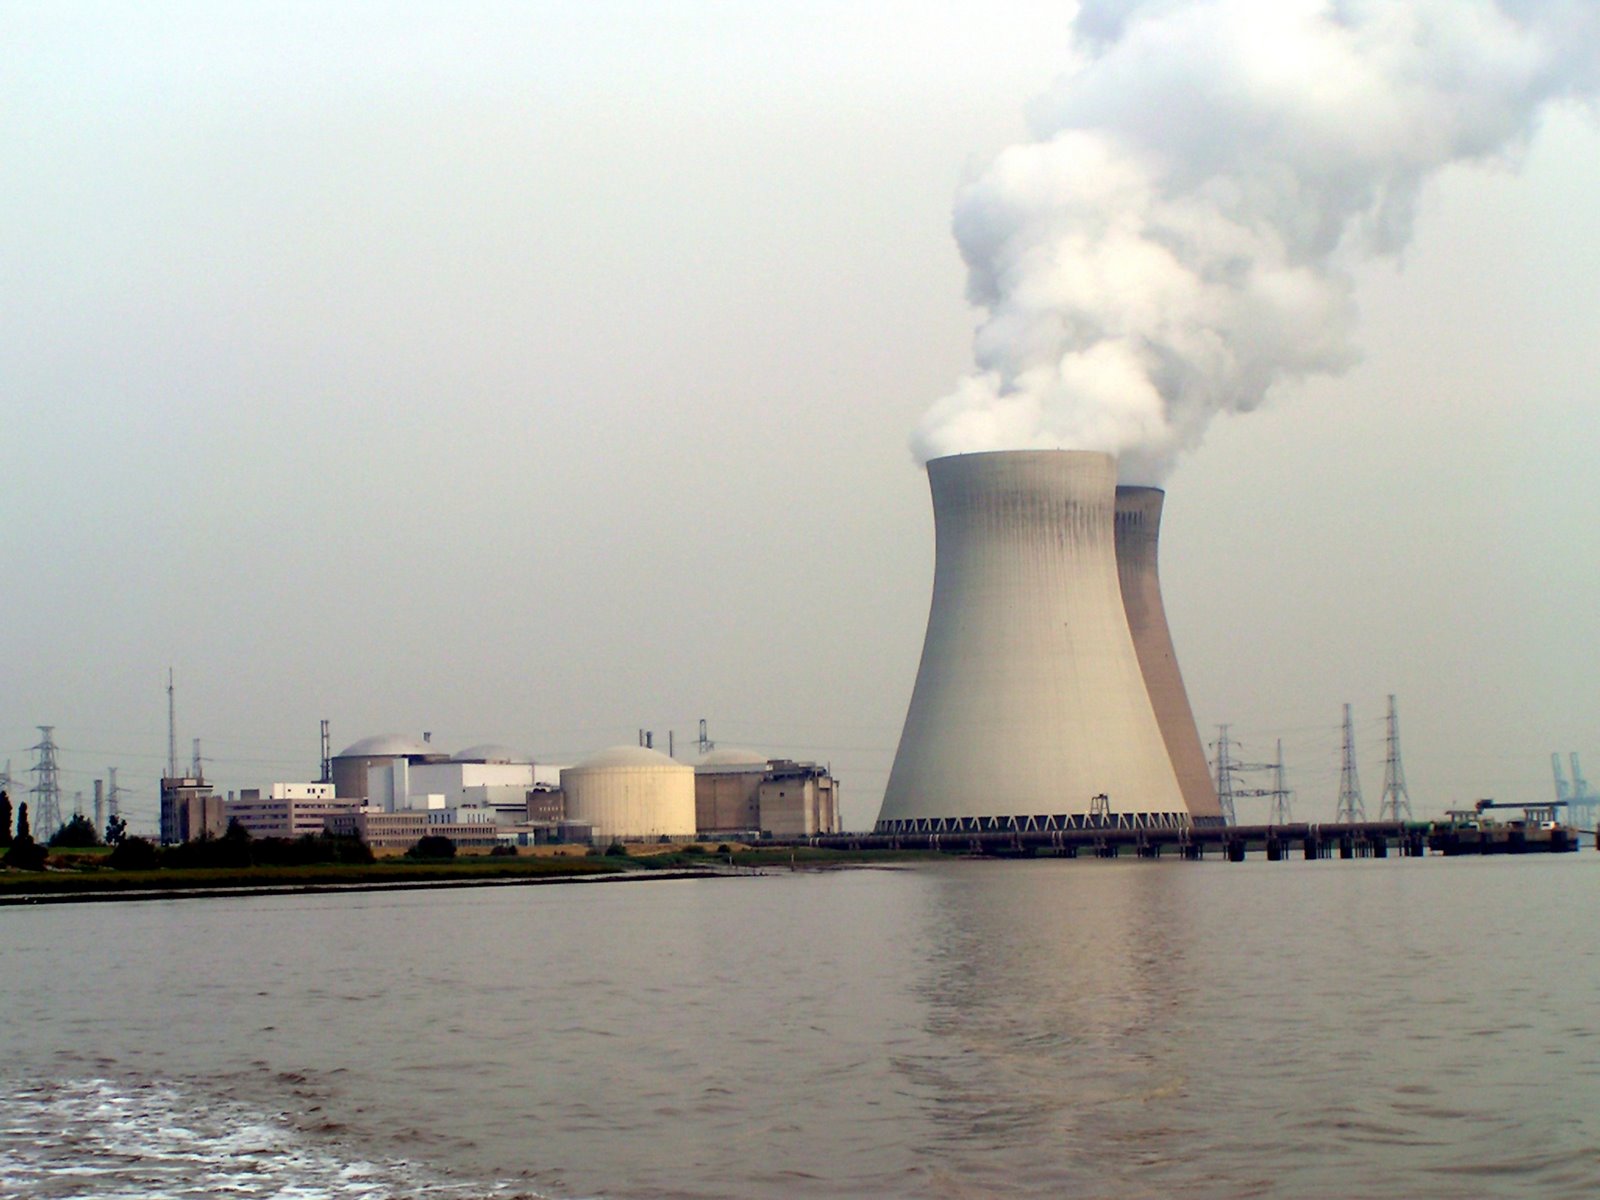 Reactoare nucleare belgiene, pericol pentru mediu